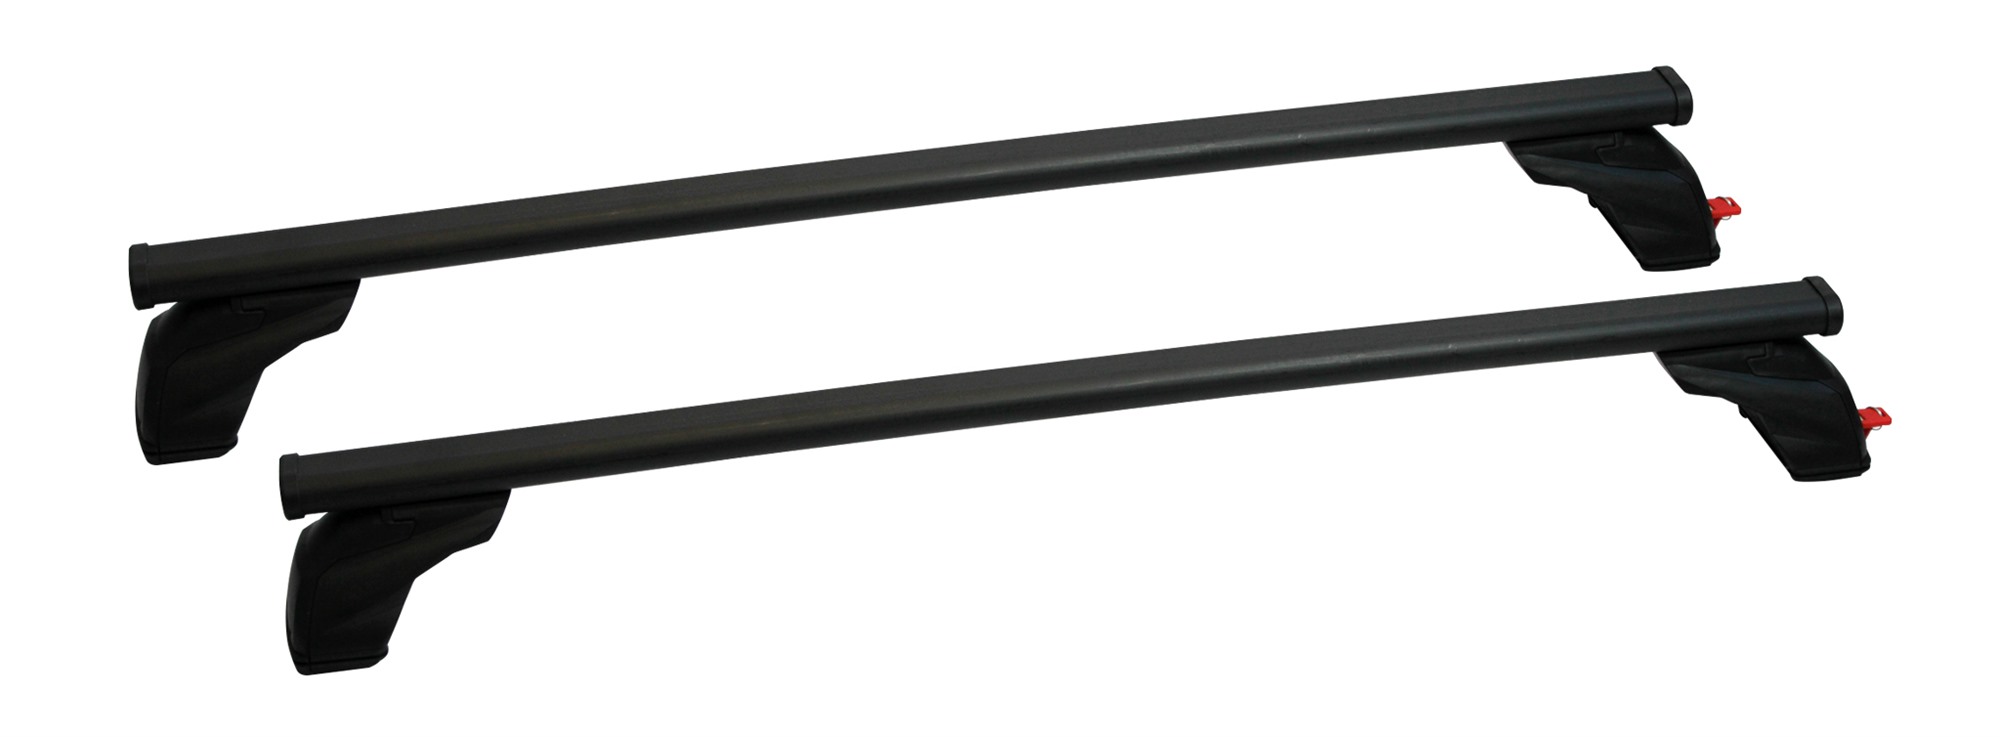 Σετ Μπάρες Οροφής Σιδερένιες με τα πόδια 127εκ για VW Golf Plus 5D 2005-2014 2τμχ Pacific G3